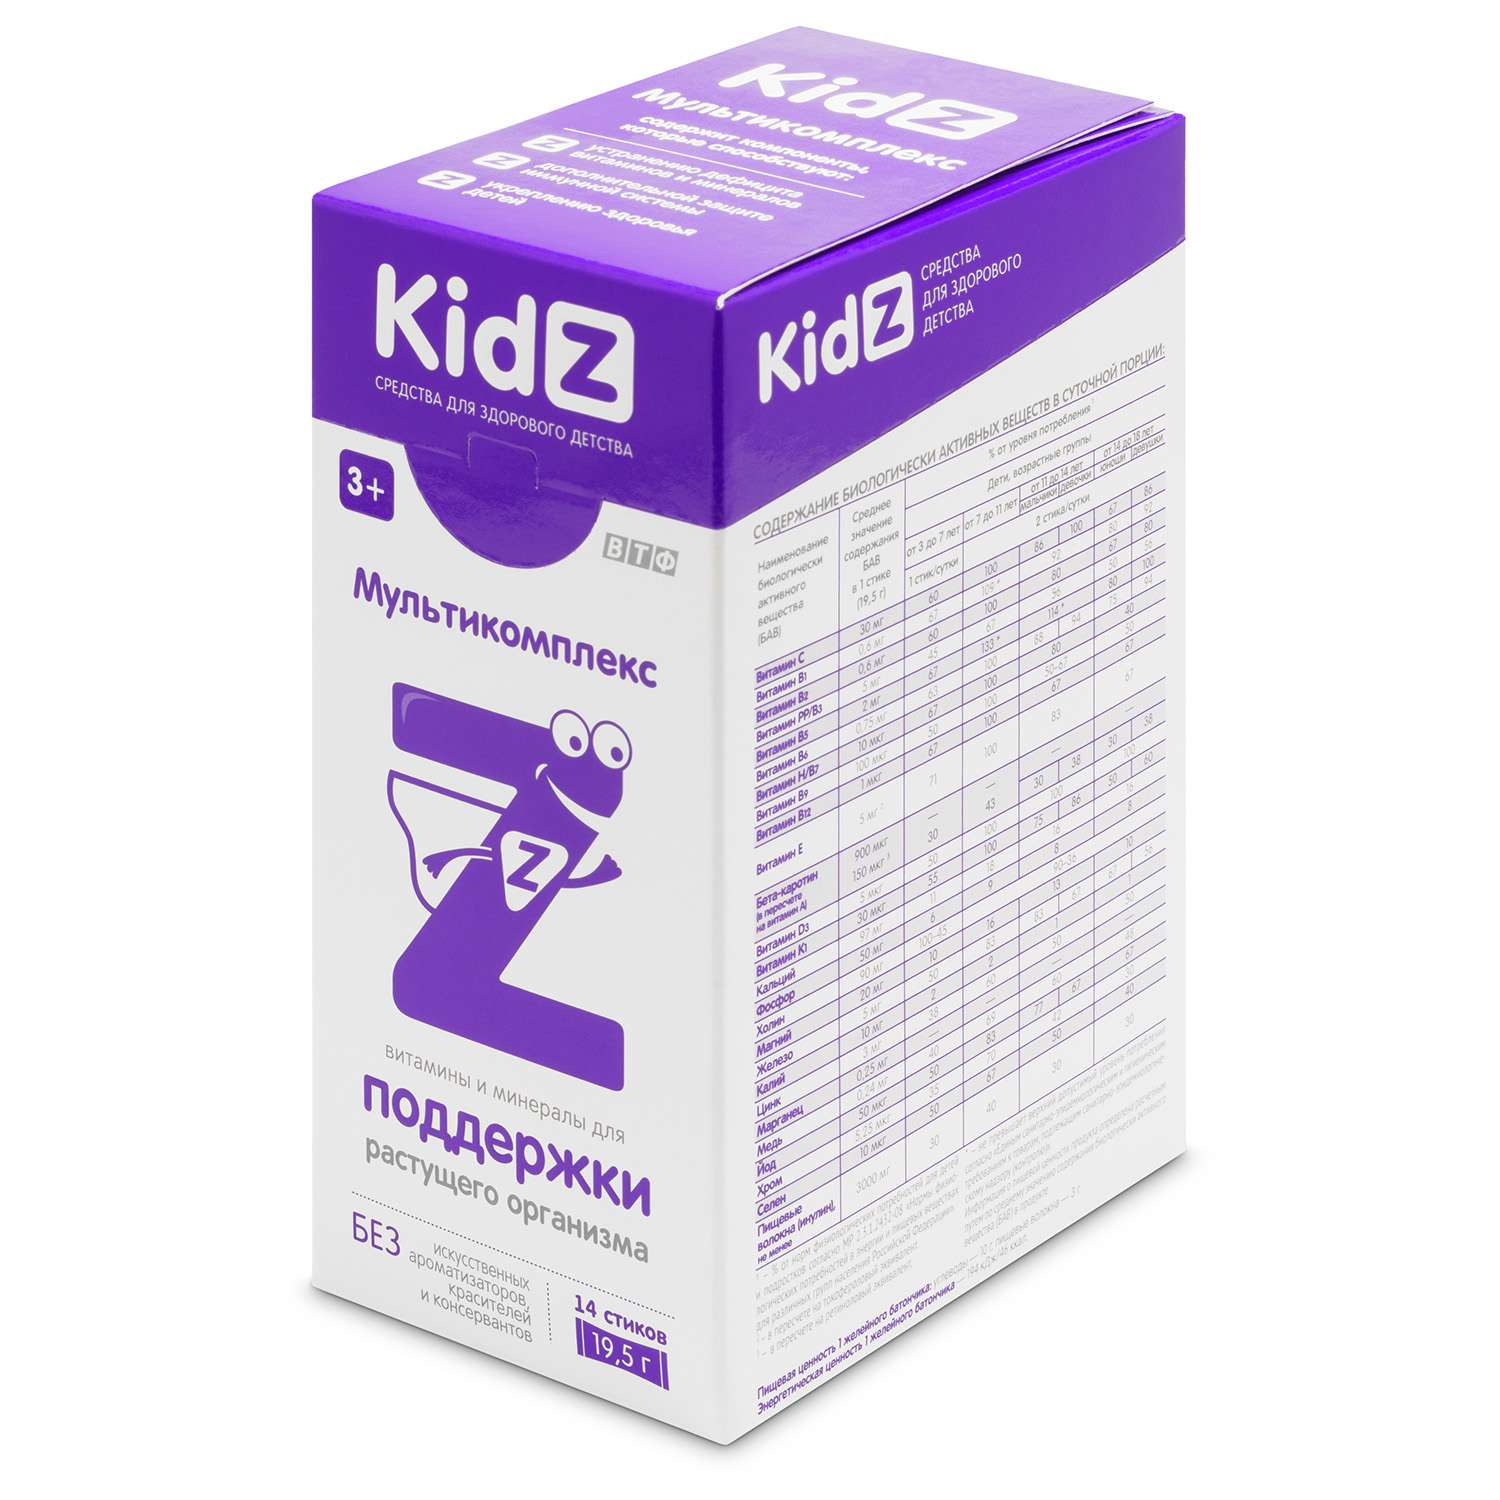 Биологически активная добавка Kidz Мультикомплекс для детей 14стиков*19.5г - фото 2